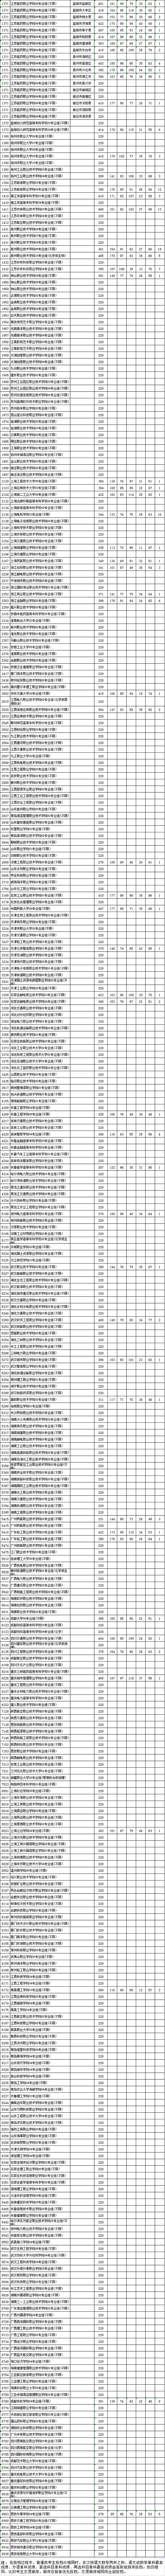 江苏专科征集志愿的院校2021 江苏专科征集志愿的院校名单